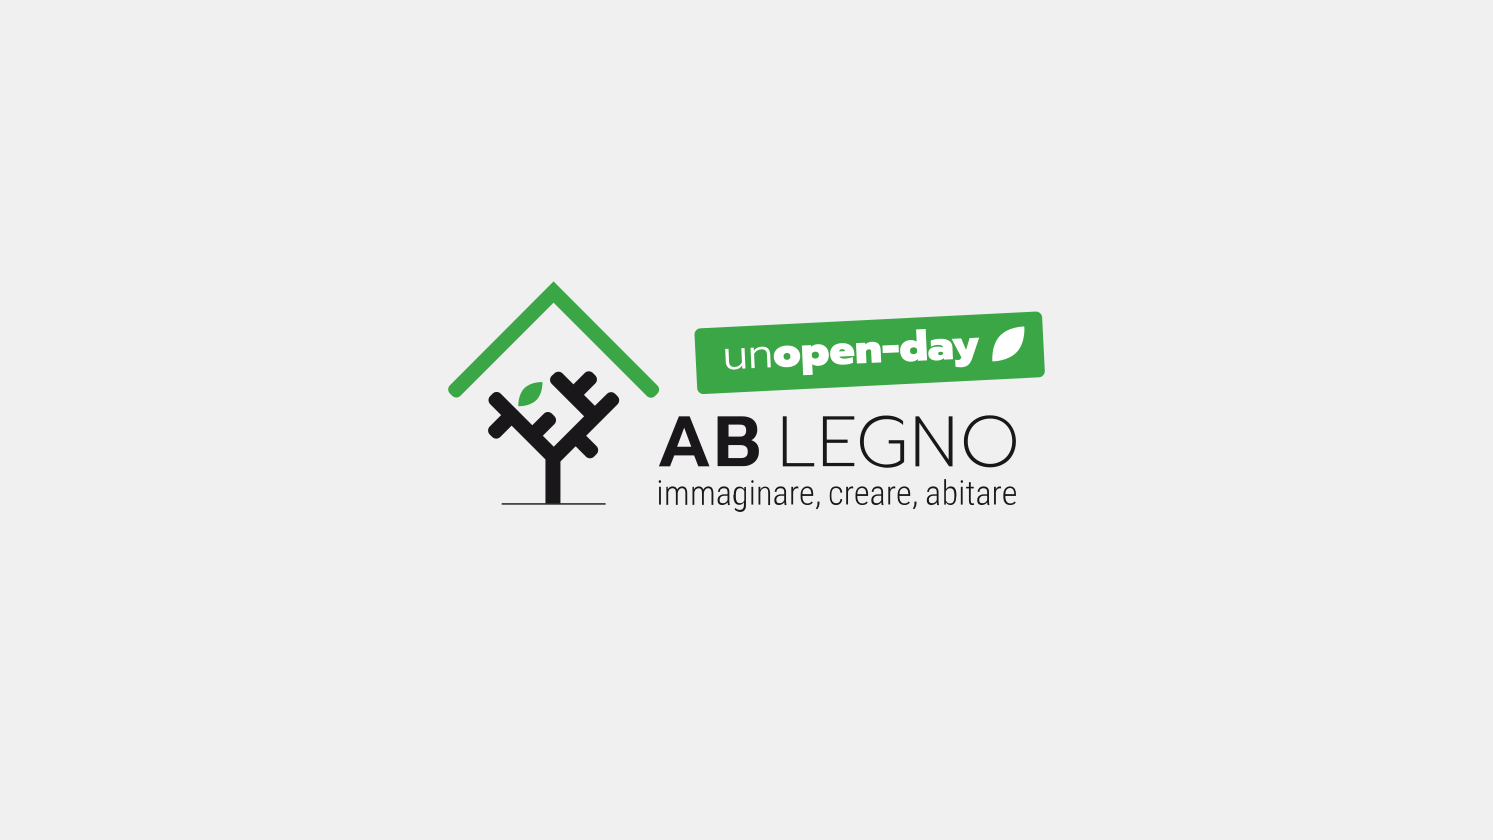 Unopen day AB Legno